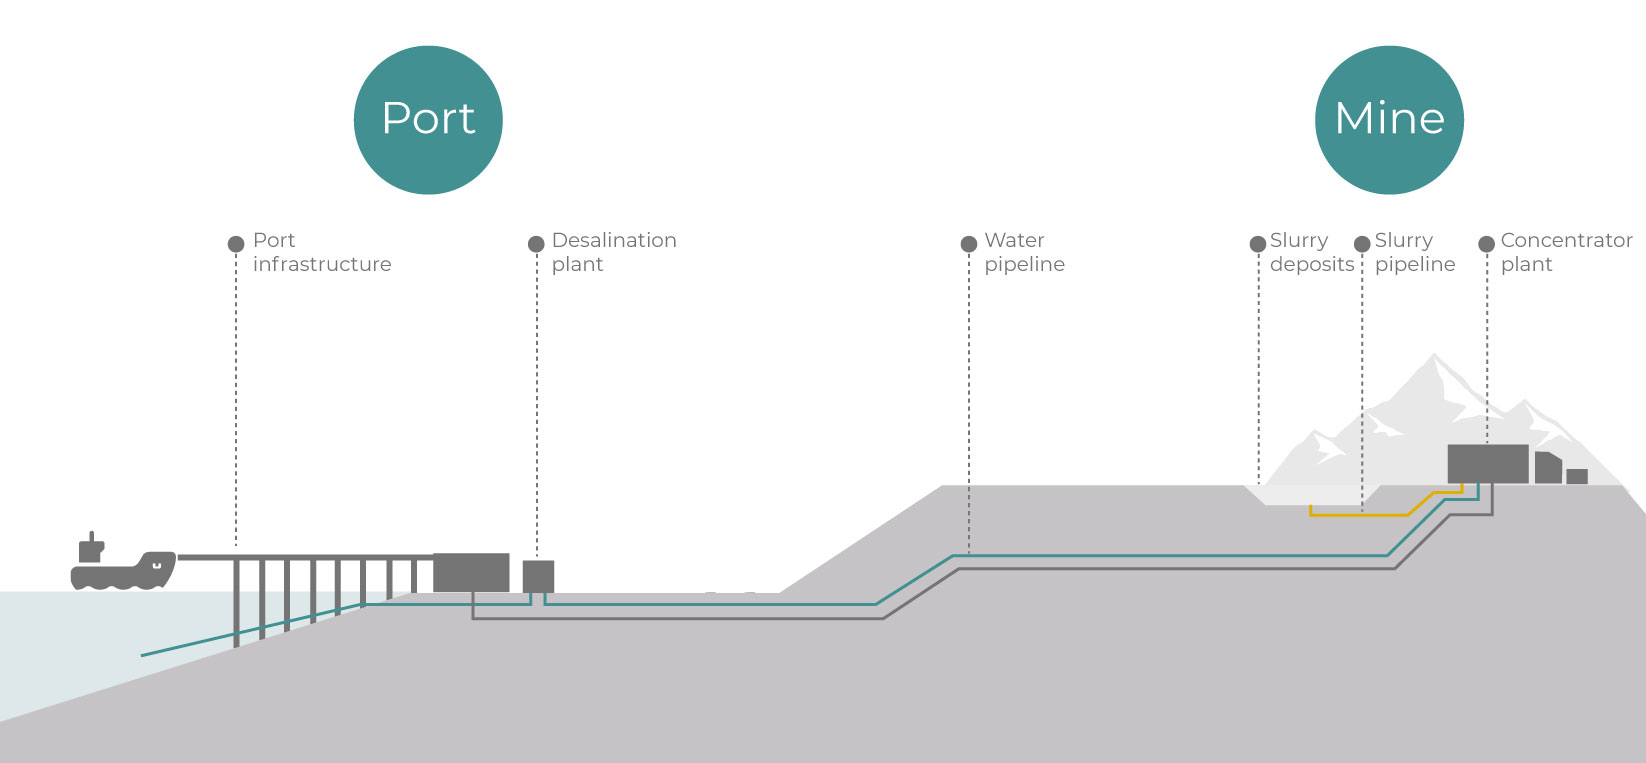 Figura 5: Exemplo de uma operação de um mineroduto que usa água dessalinizada extraída do mar por meio de osmose reversa